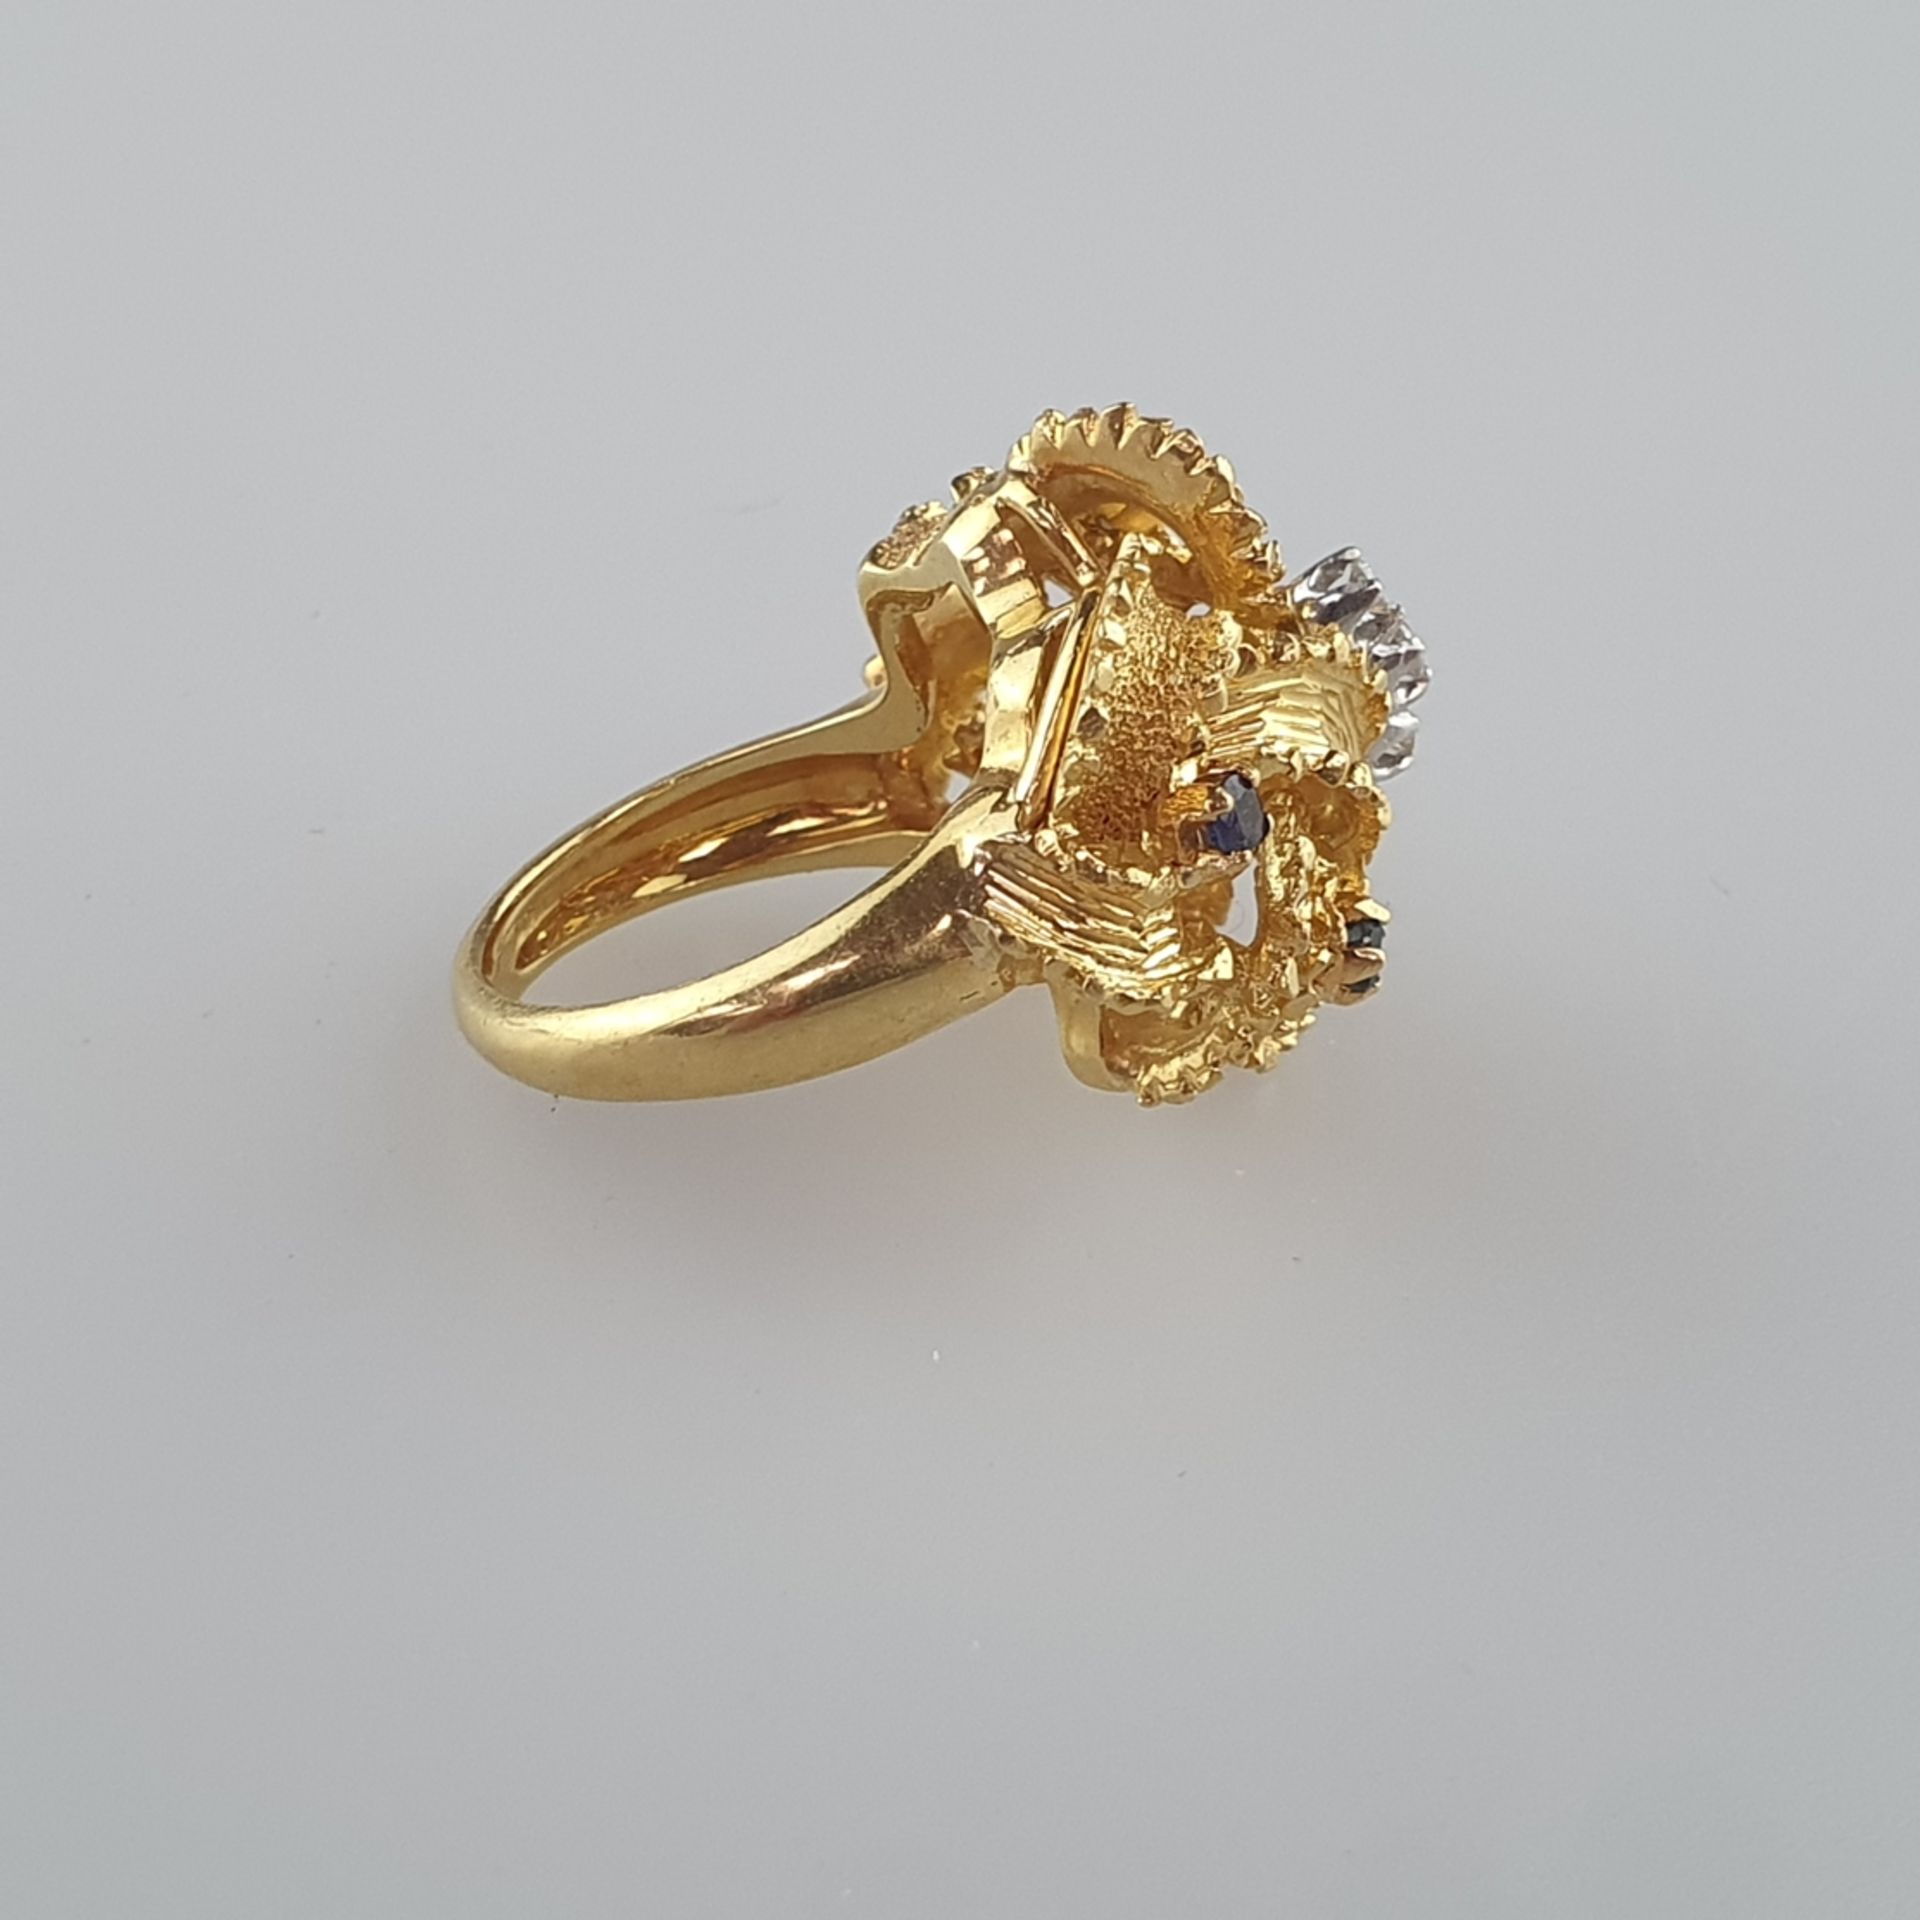 Imposanter Goldring mit Brillanten und Saphiren - Gelb-/Weißgold 750/000, im Ringkopf gestempelt, k - Bild 3 aus 5